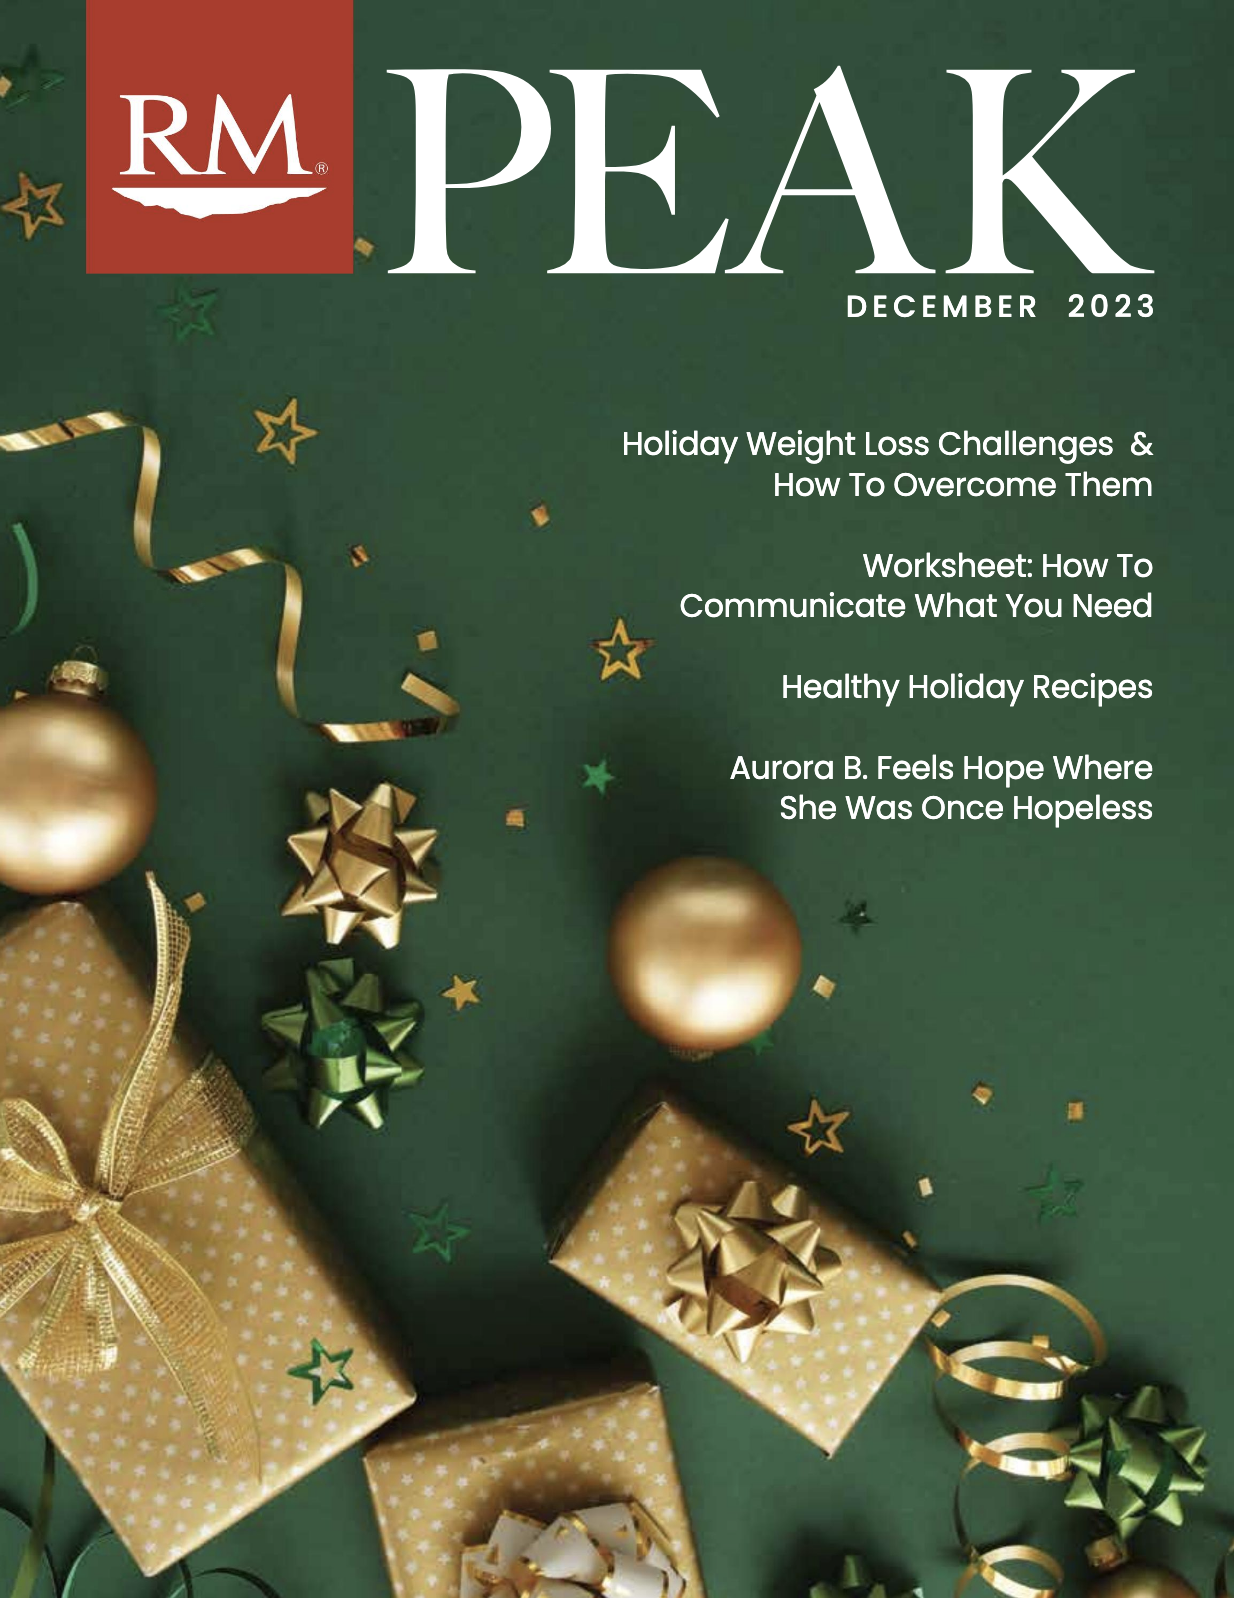 RM Peak December Newsletter